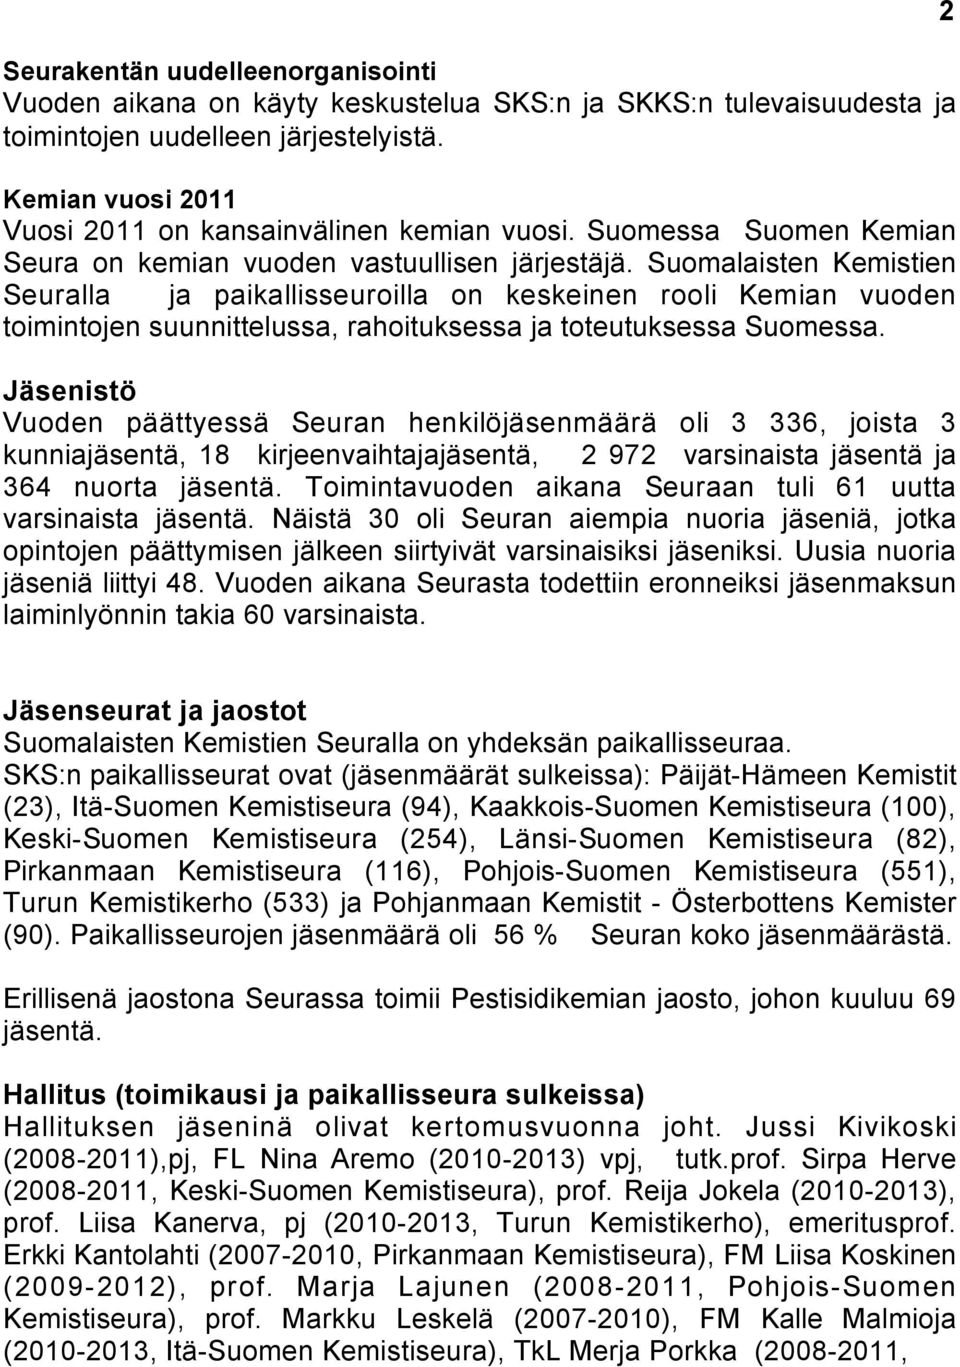 Suomalaisten Kemistien Seuralla ja paikallisseuroilla on keskeinen rooli Kemian vuoden toimintojen suunnittelussa, rahoituksessa ja toteutuksessa Suomessa.